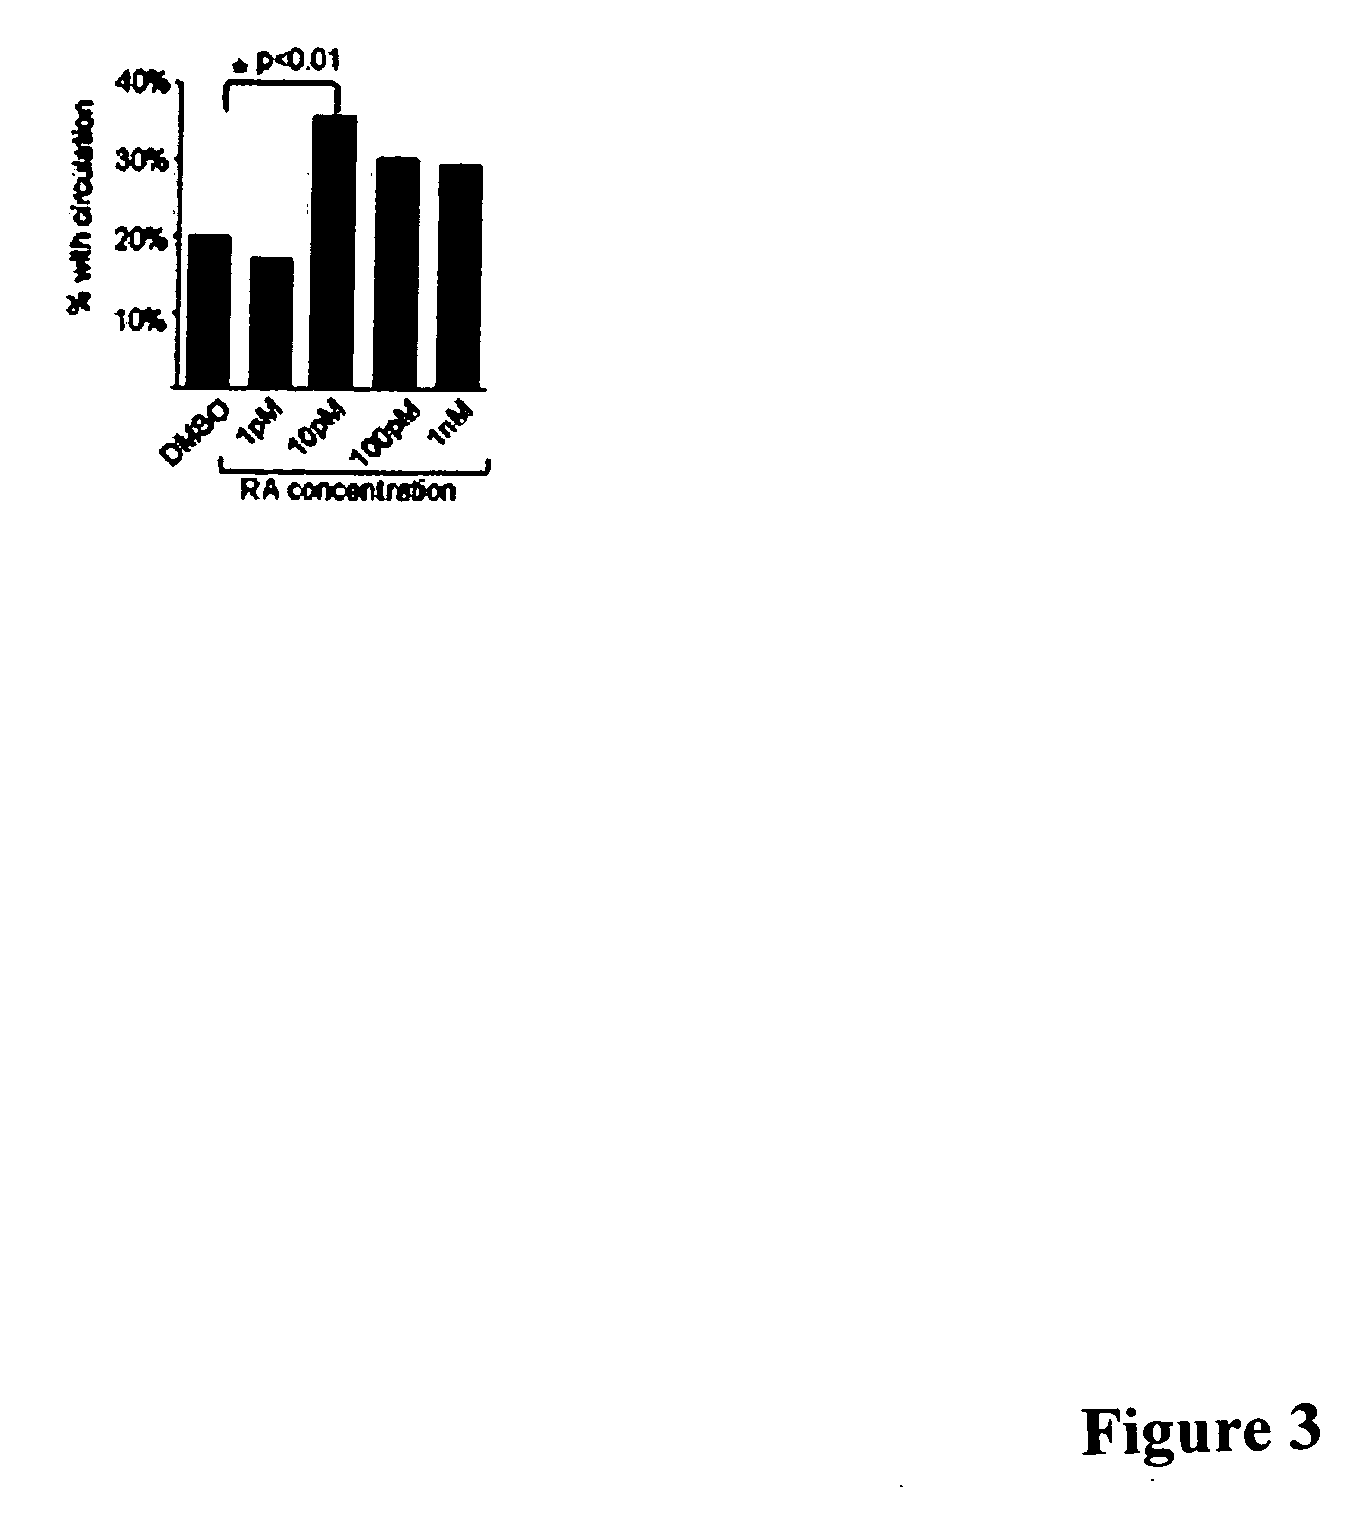 Zebrafish models of acute myelogenous leukemia